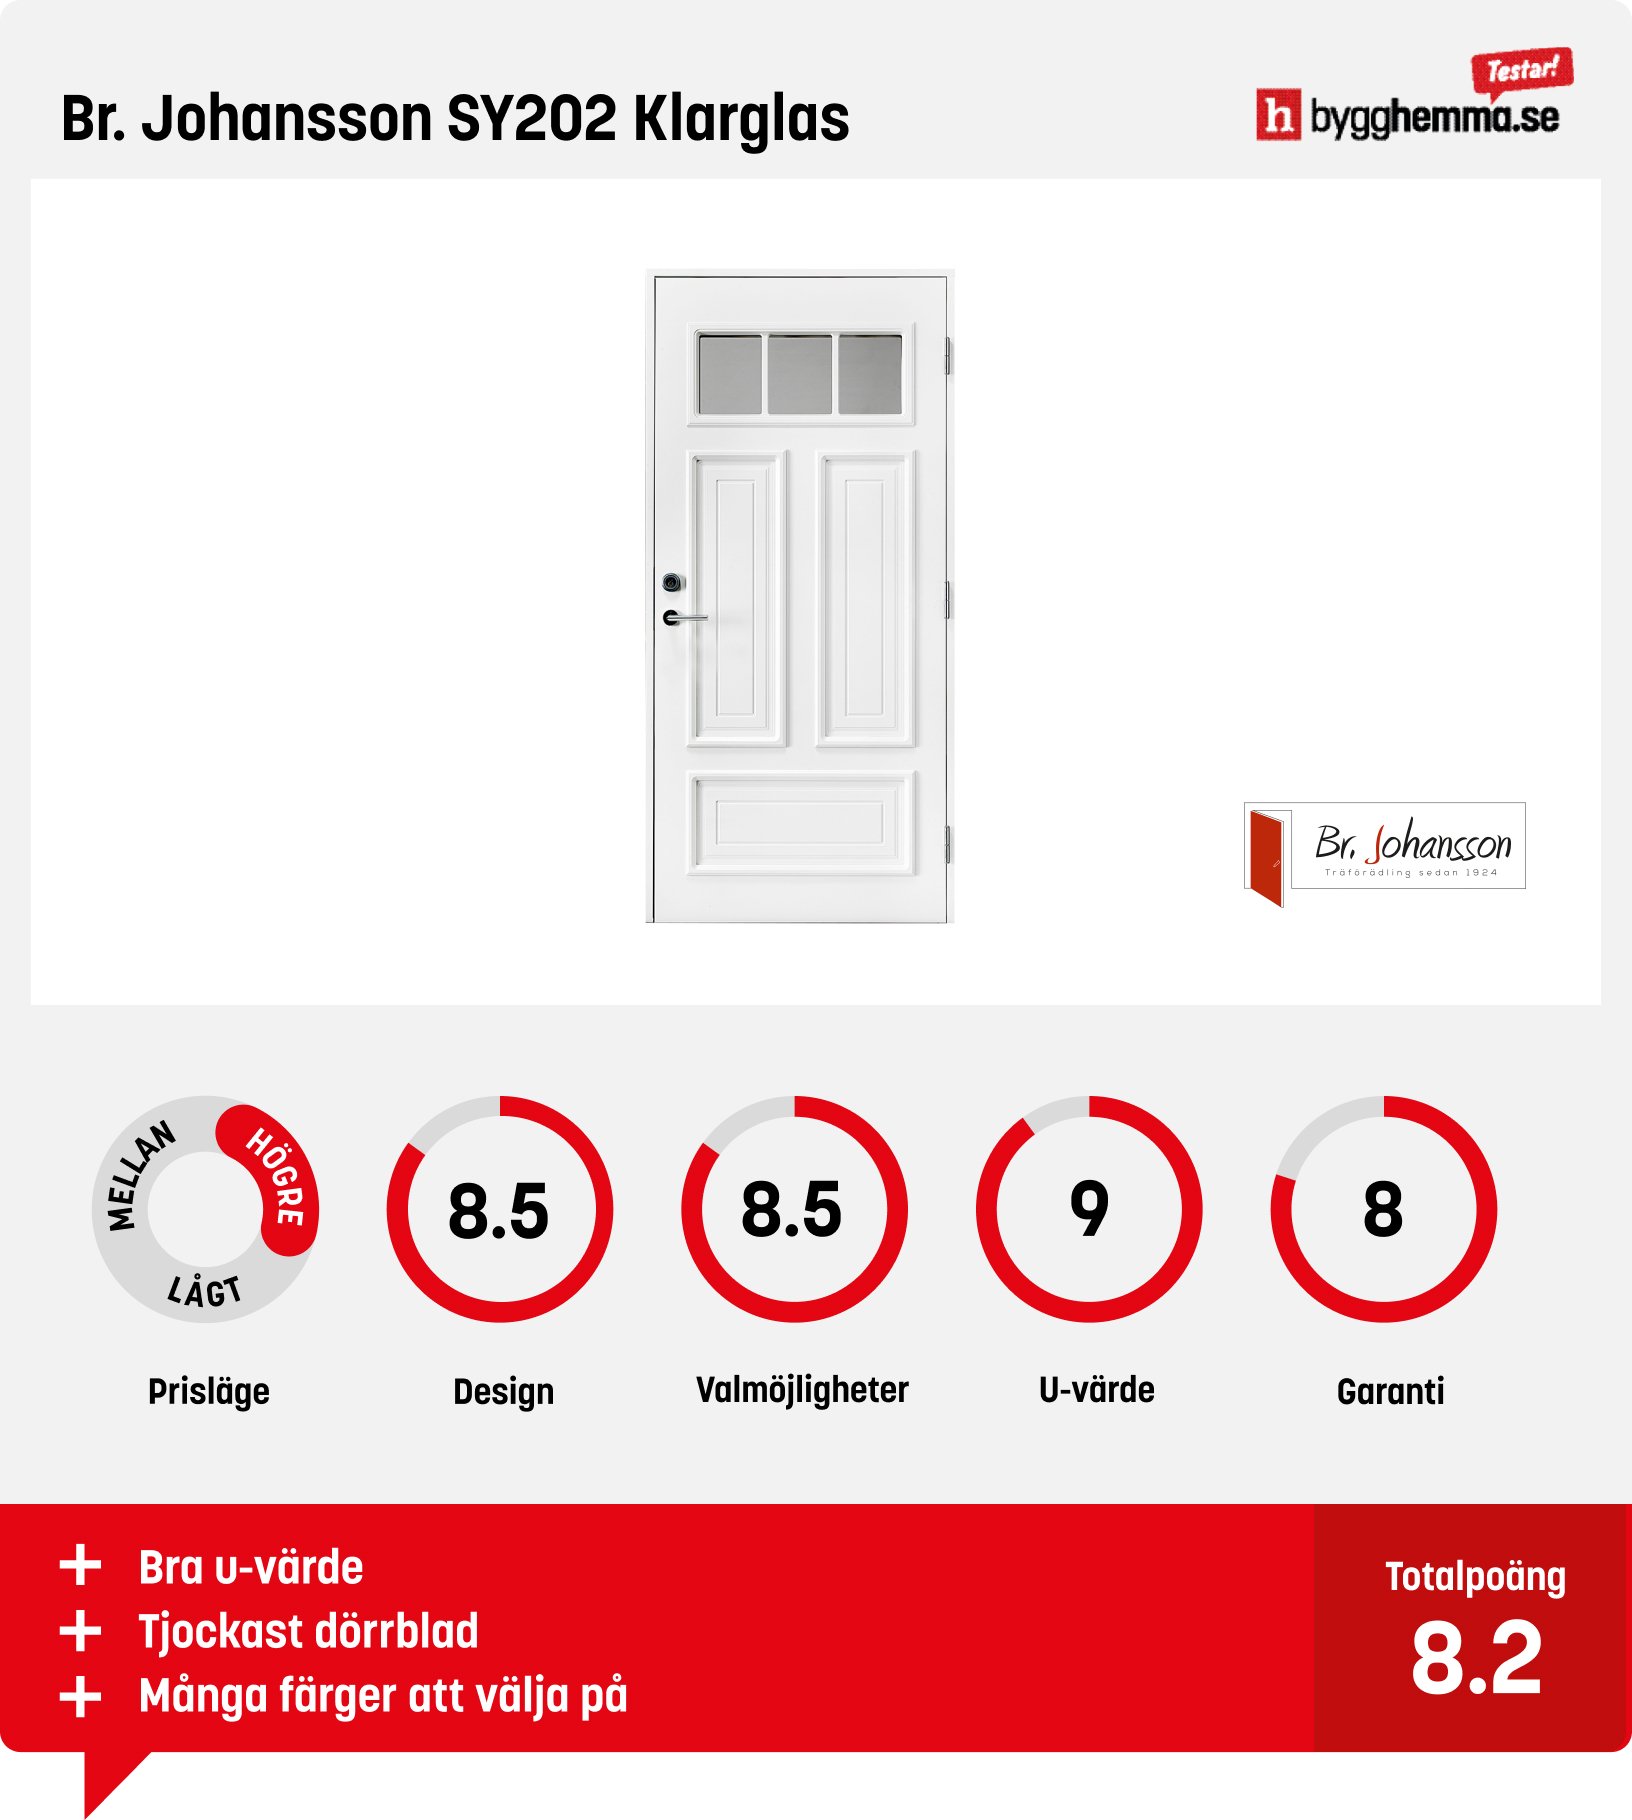 Ytterdörr bäst i test - Br. Johansson SY202 Klarglas